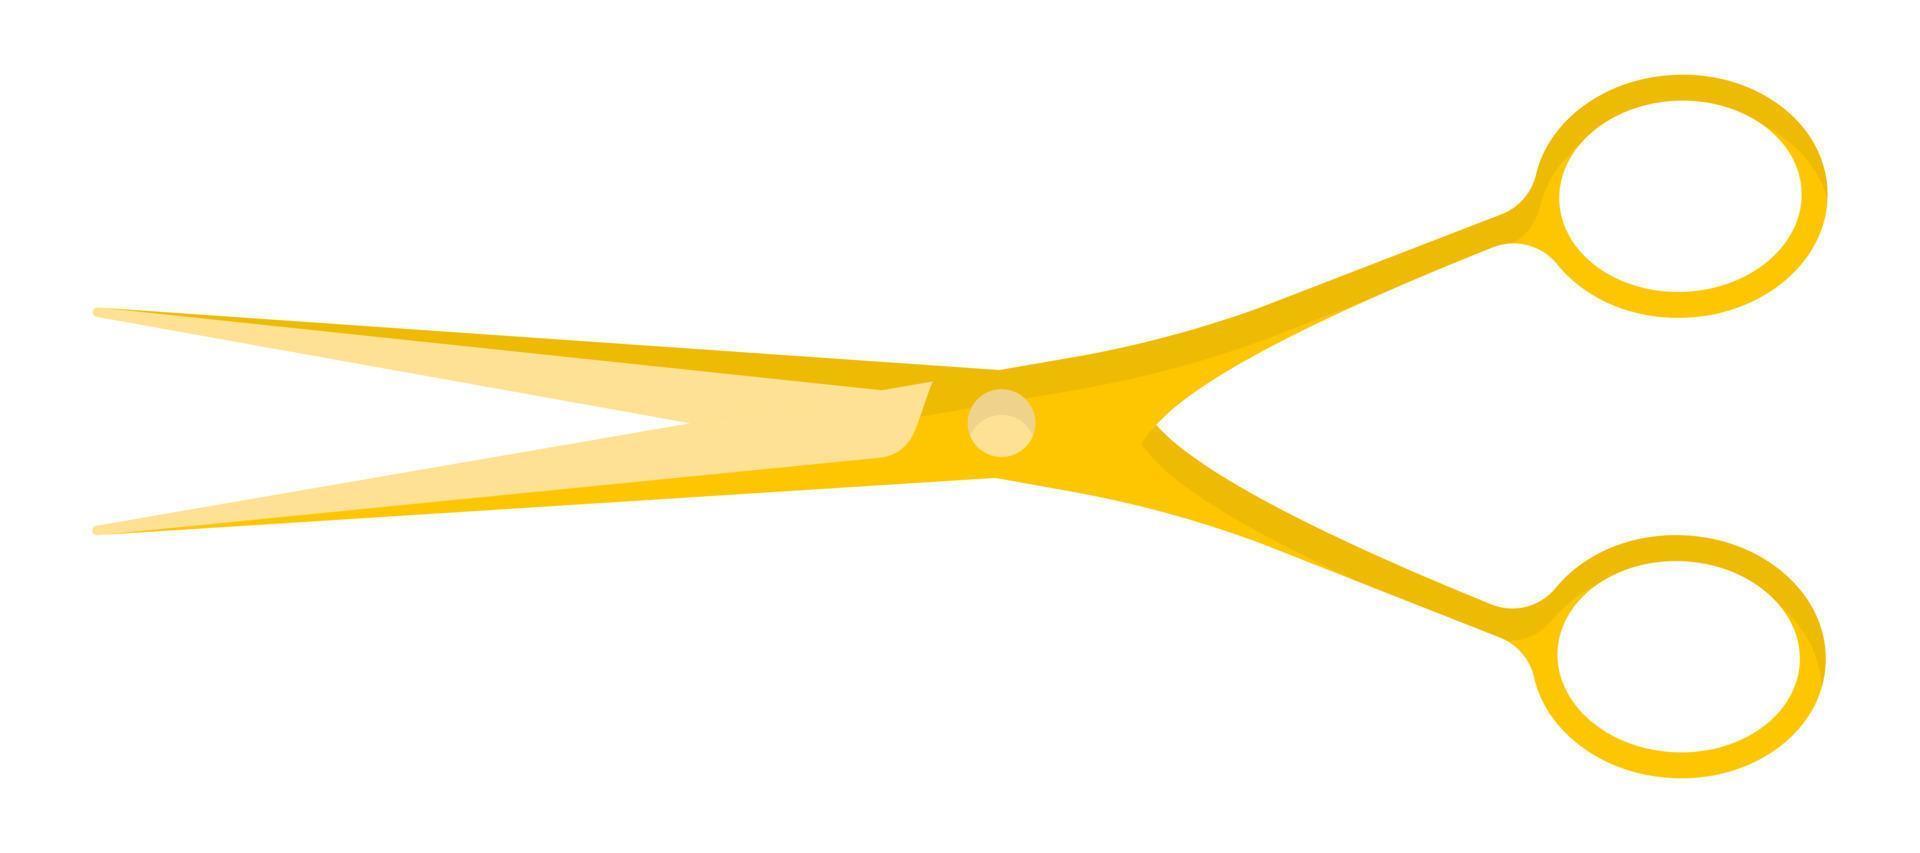 Vector cartoon yellow gold open barber scissors.